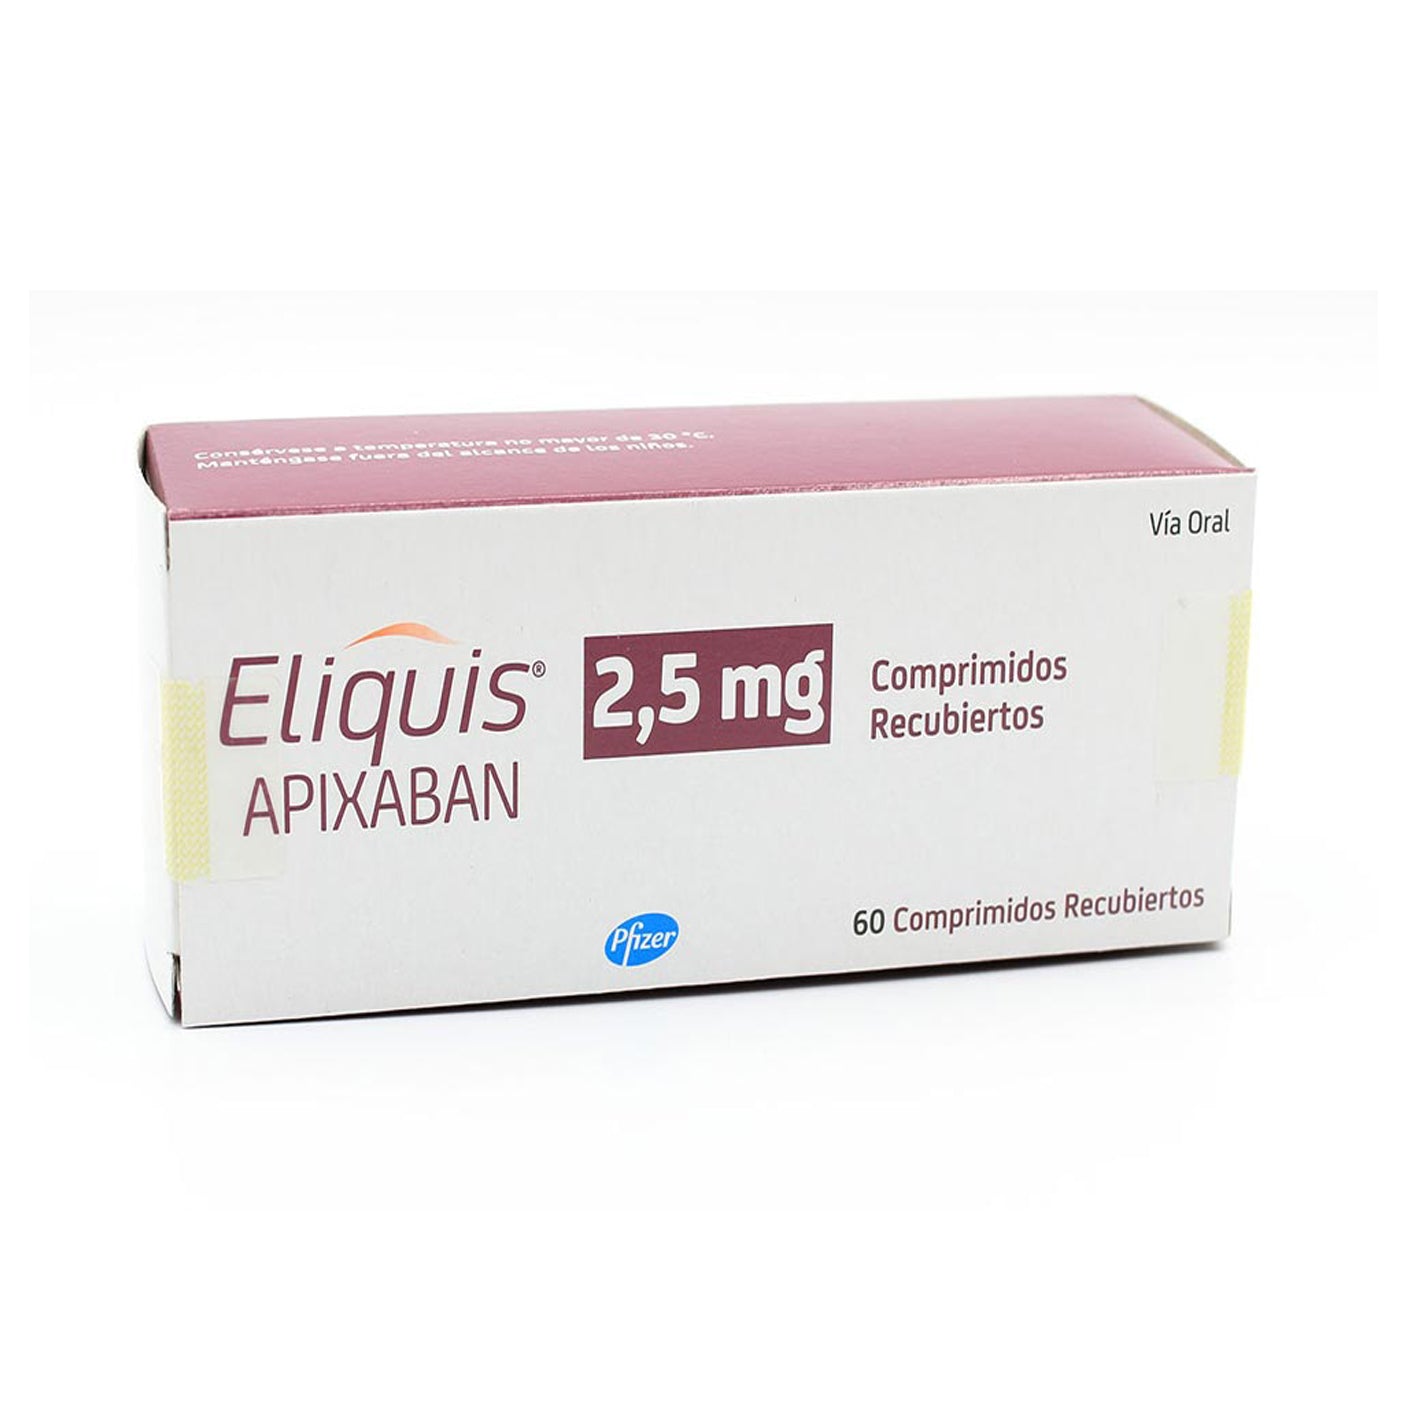 Eliquis Comprimidos Recubiertos 2,5mg